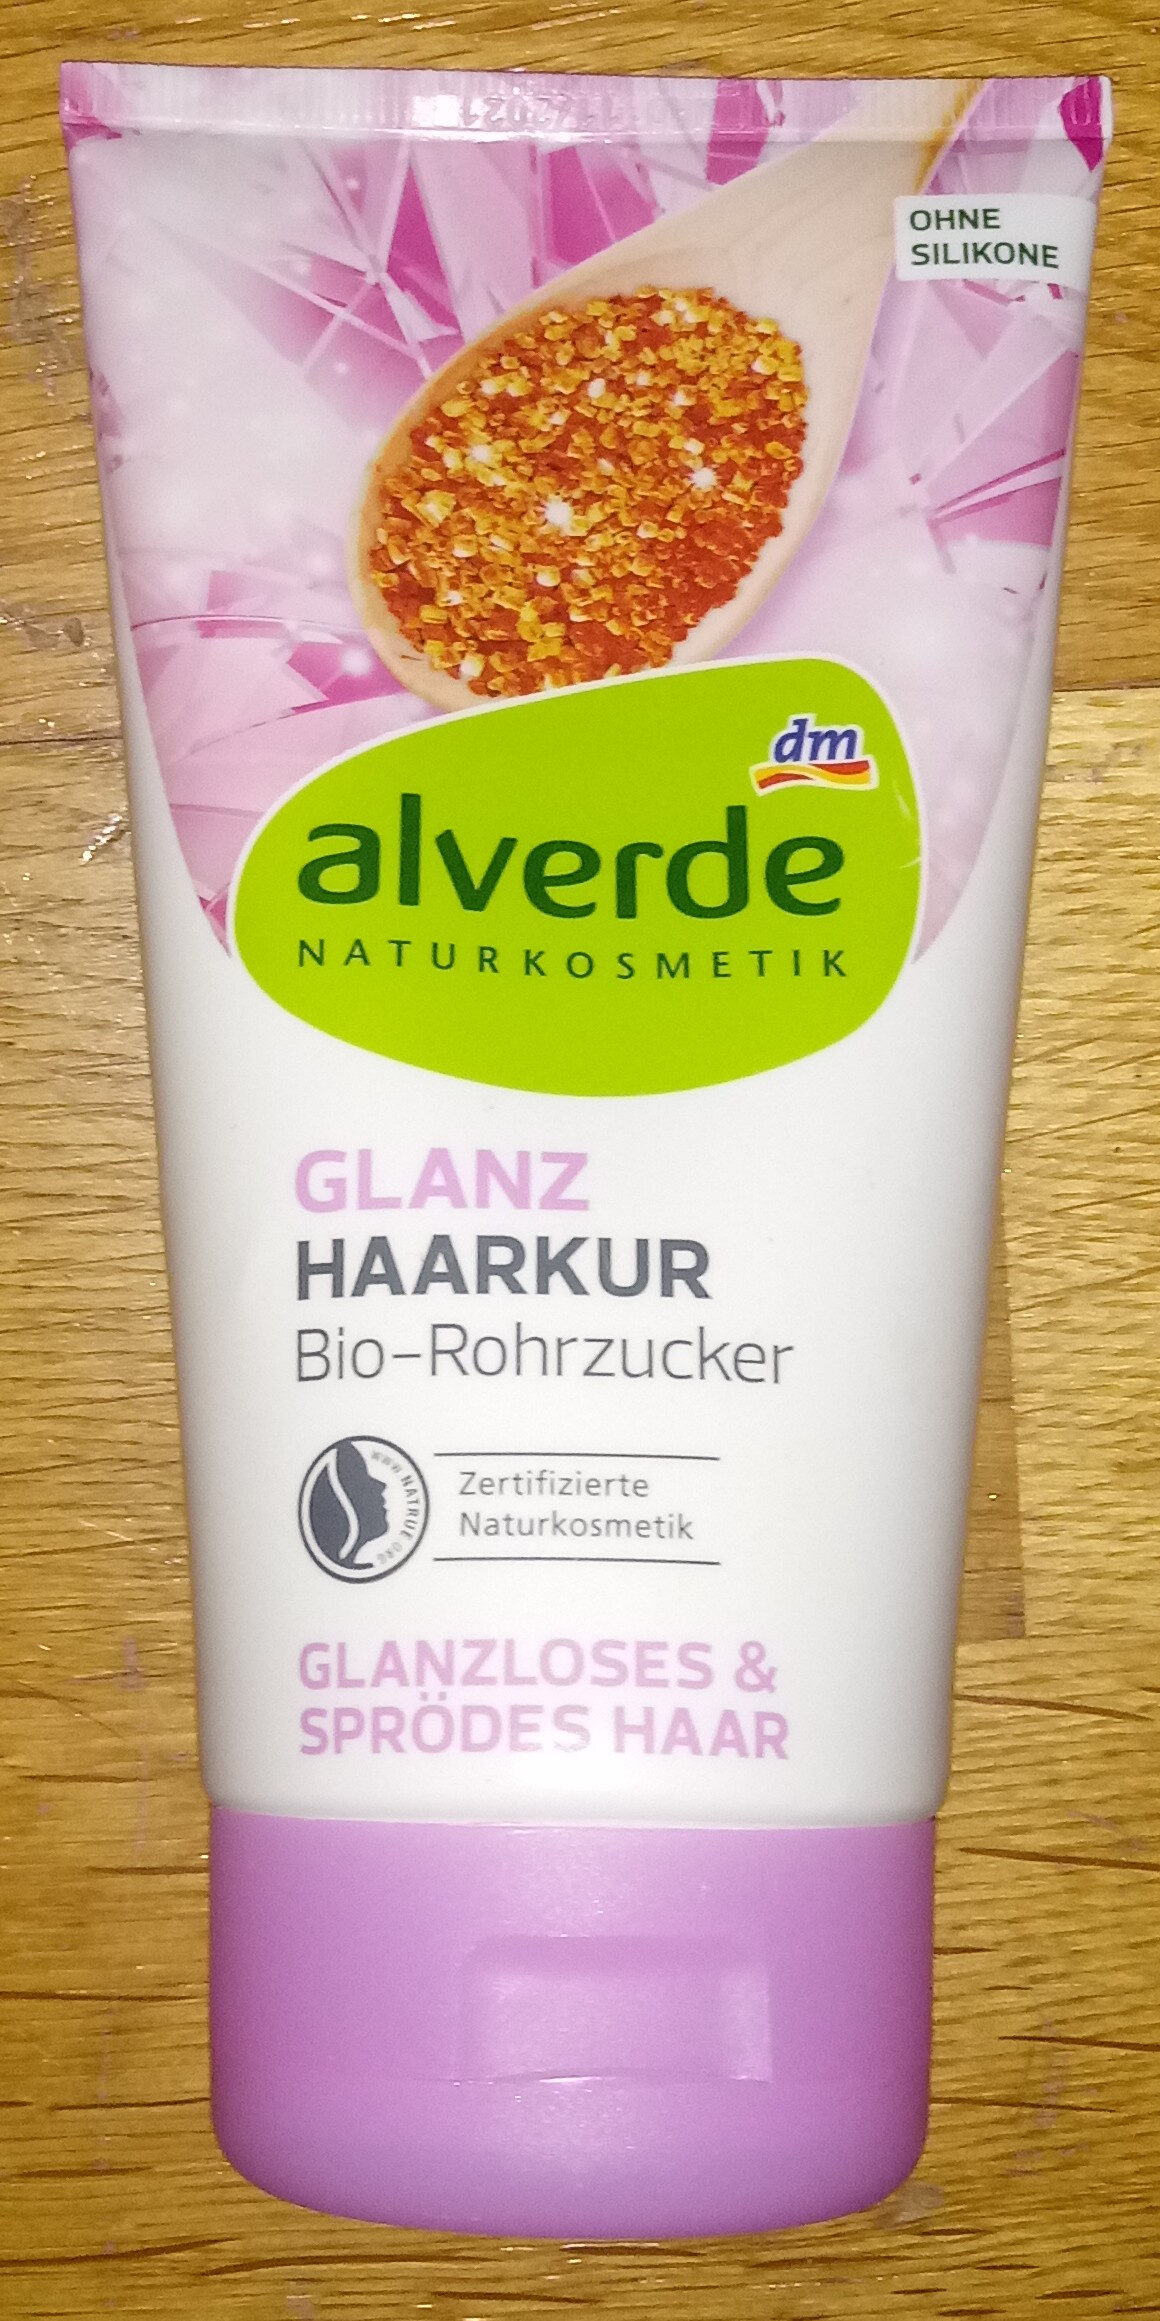 Glanz Haarkur Bio-Rohrzucker Glanzloses und sprödes Haar - Product - de